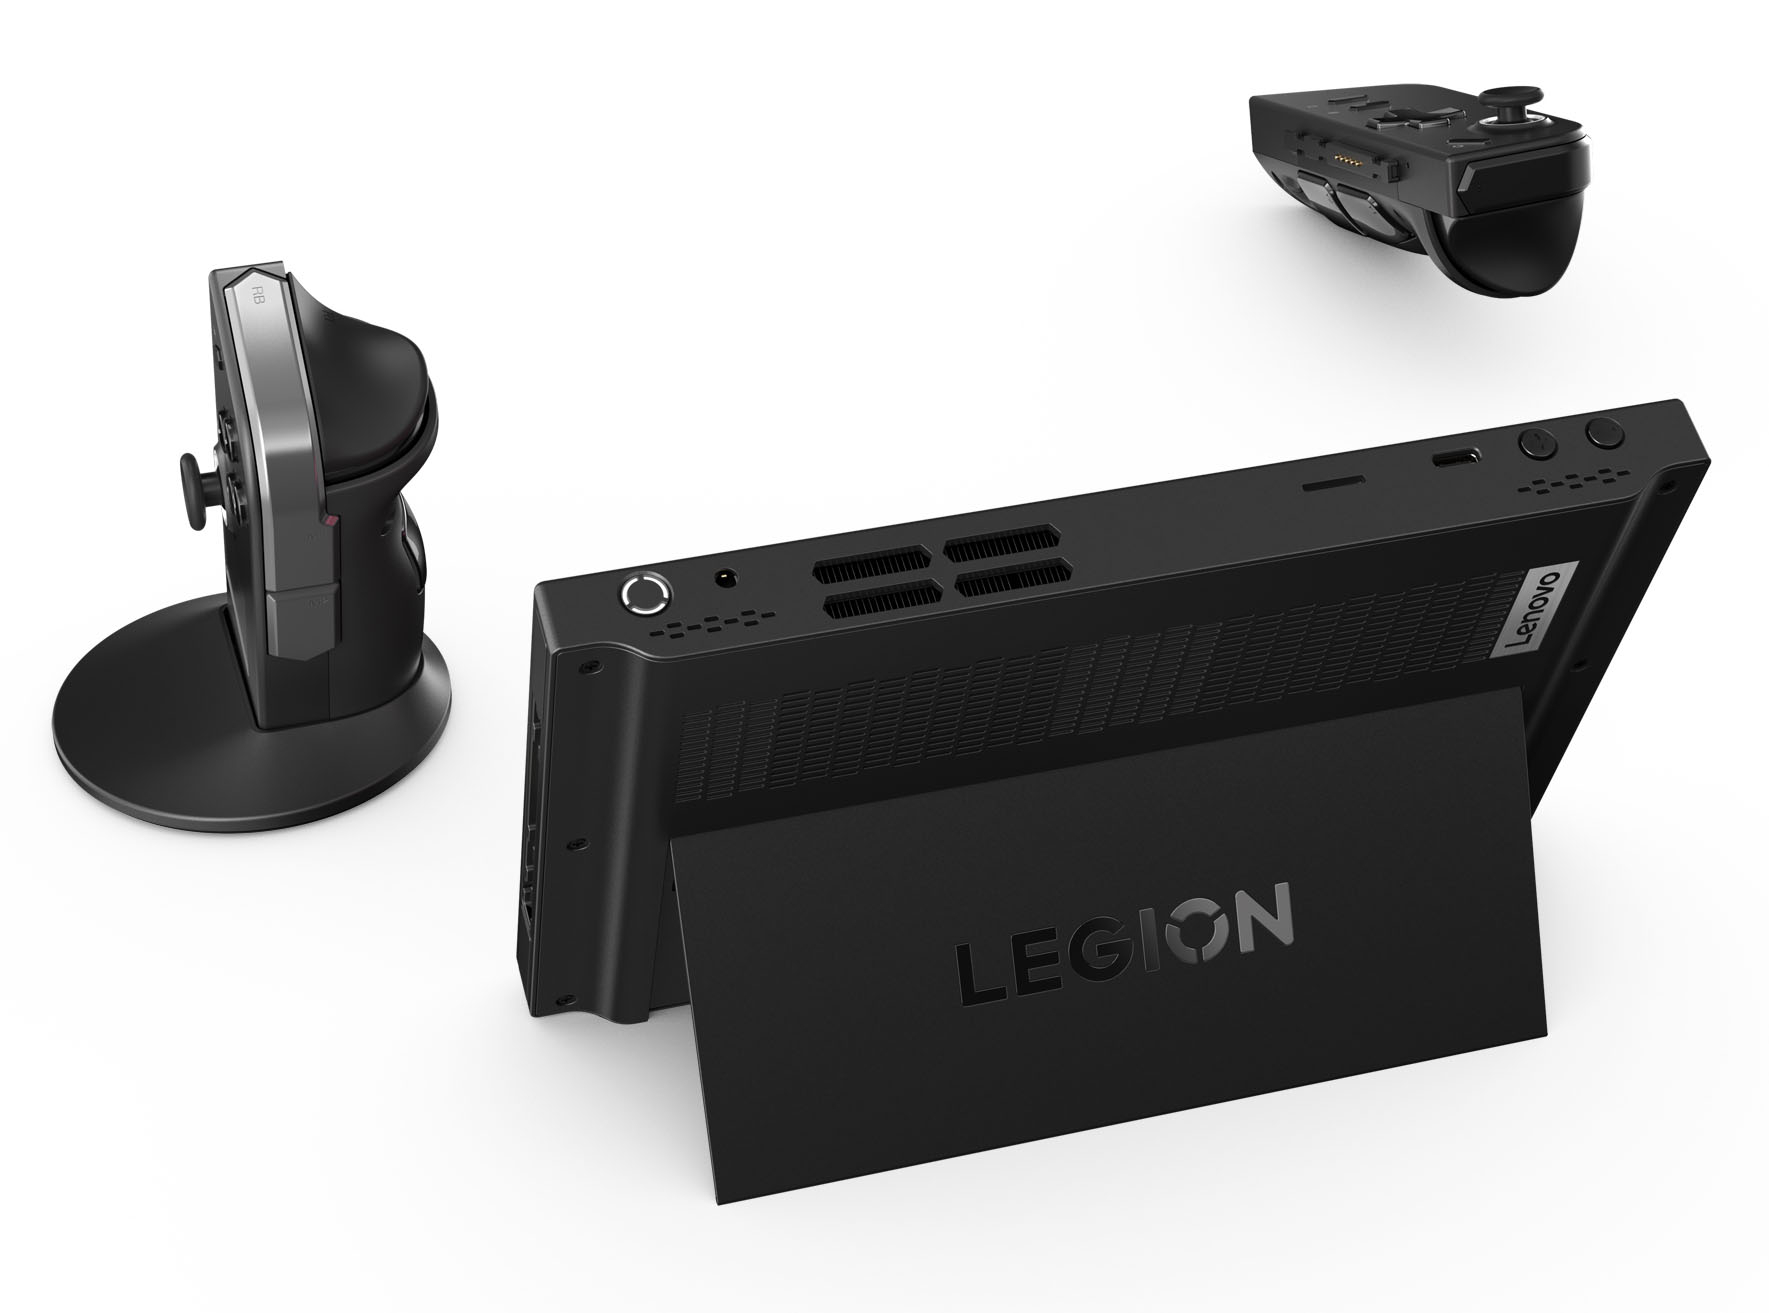 Lenovo Legion Go 8.8 144Hz WQXGA Gaming Handheld AMD Ryzen Z1